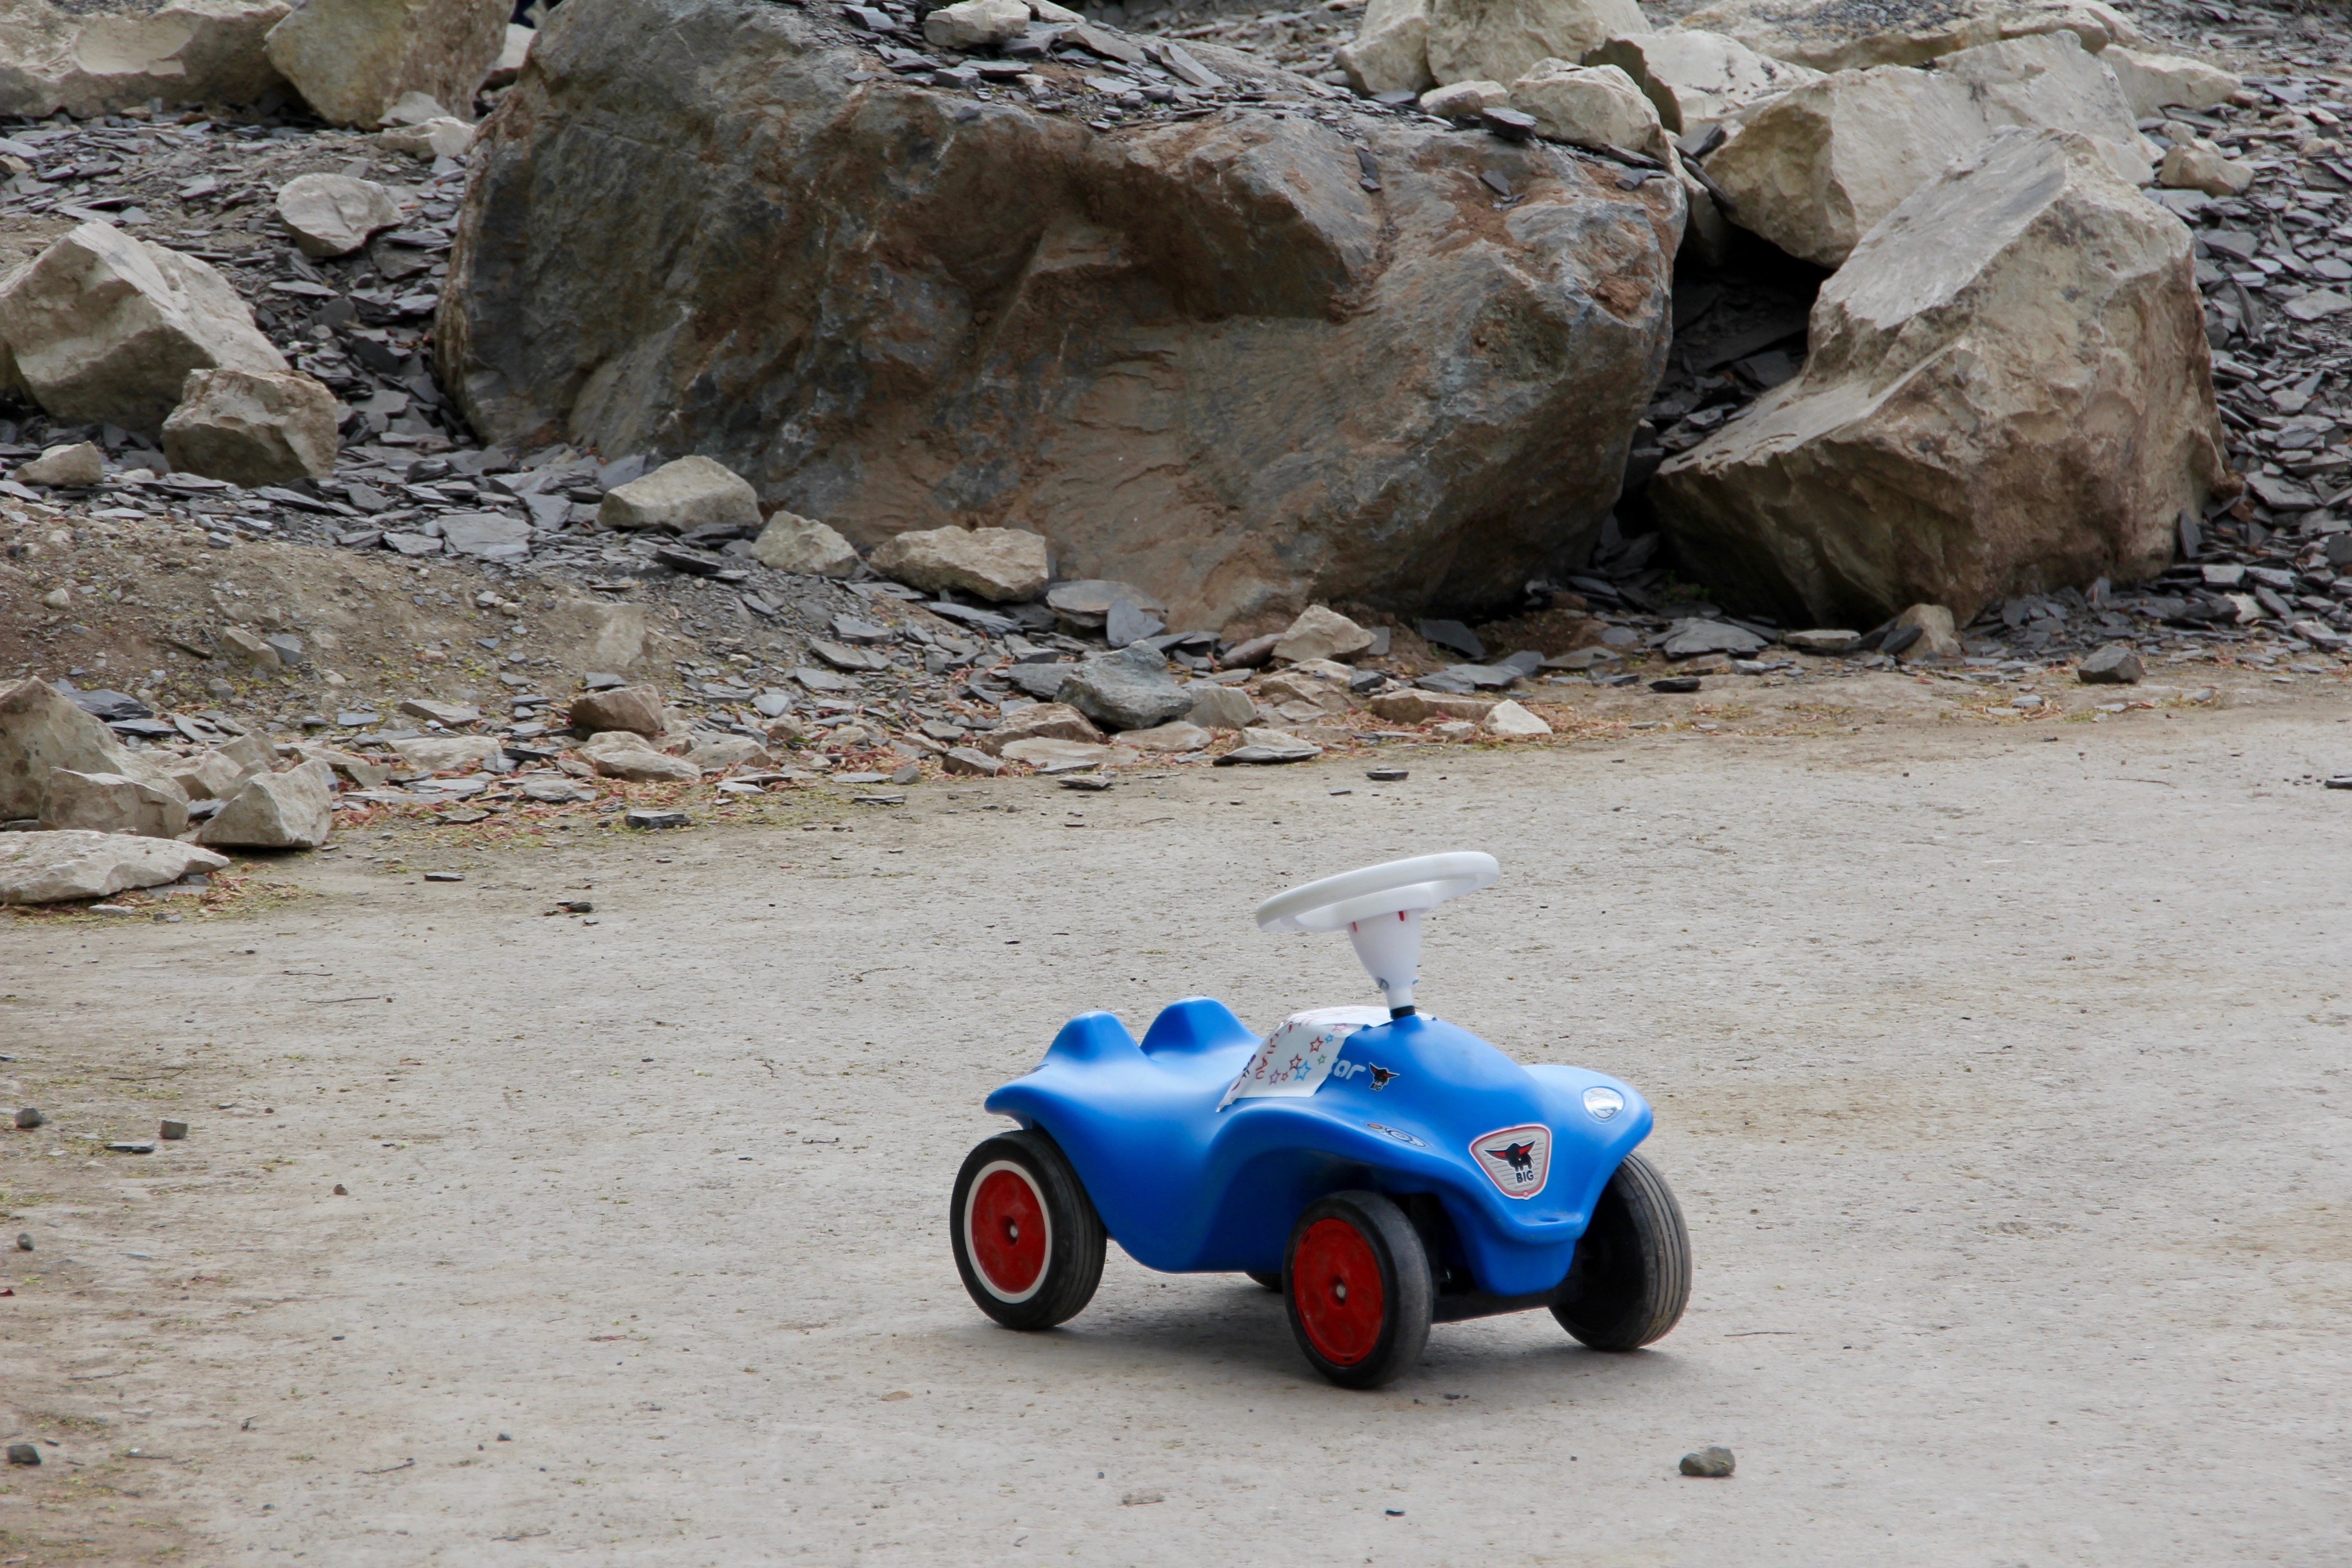 children's blue ride on car toy